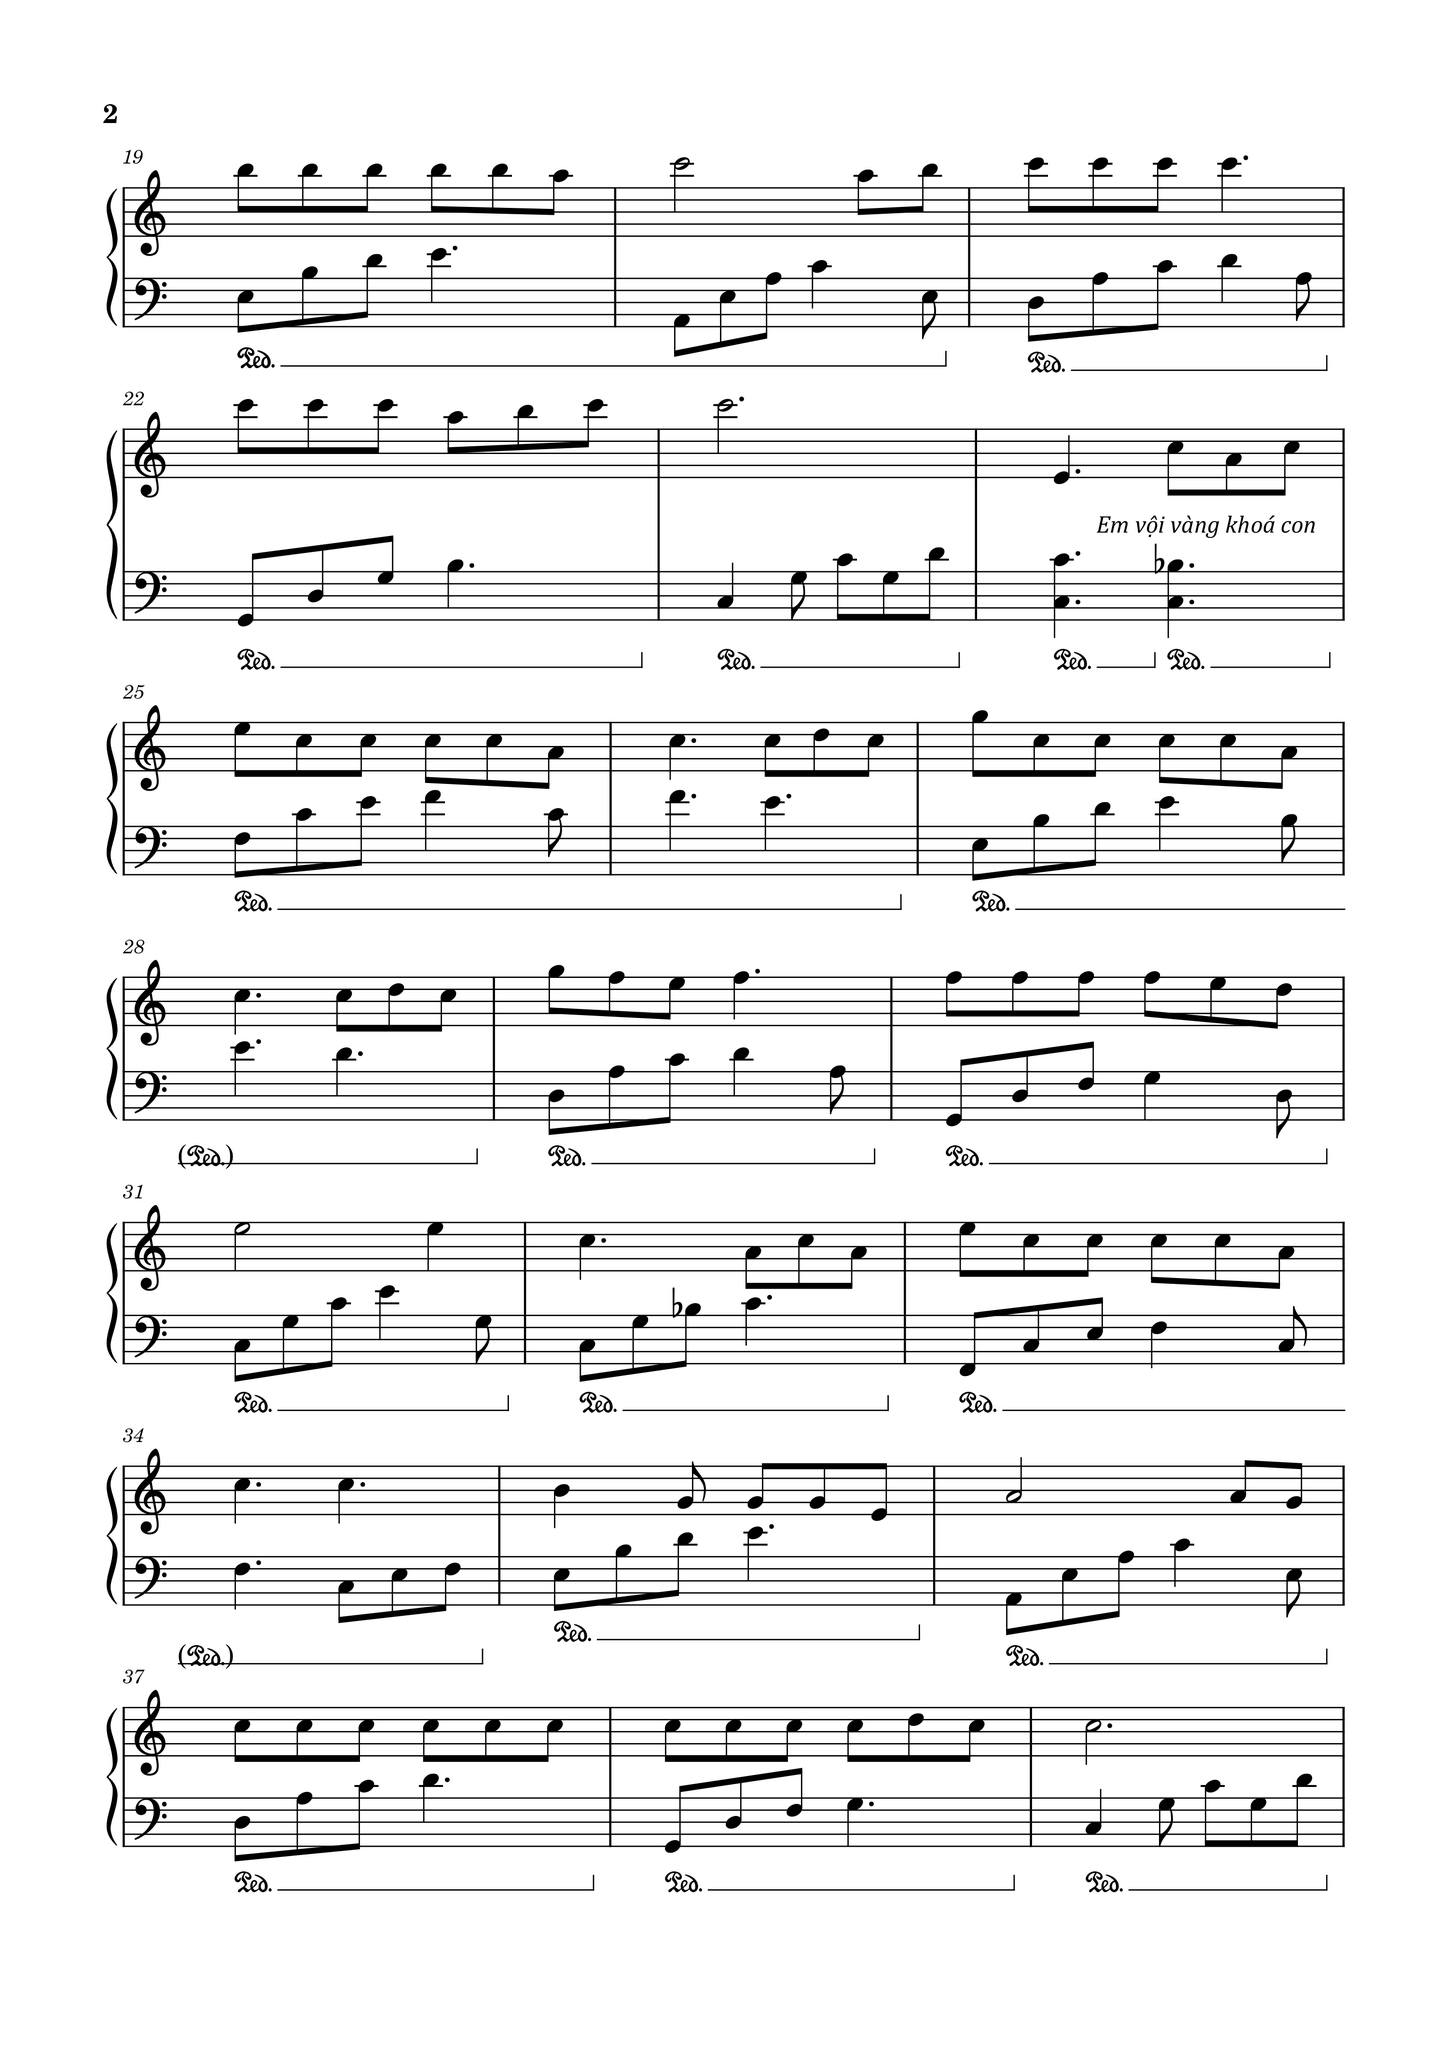 sheet-piano-chuyen-doi-ta-2